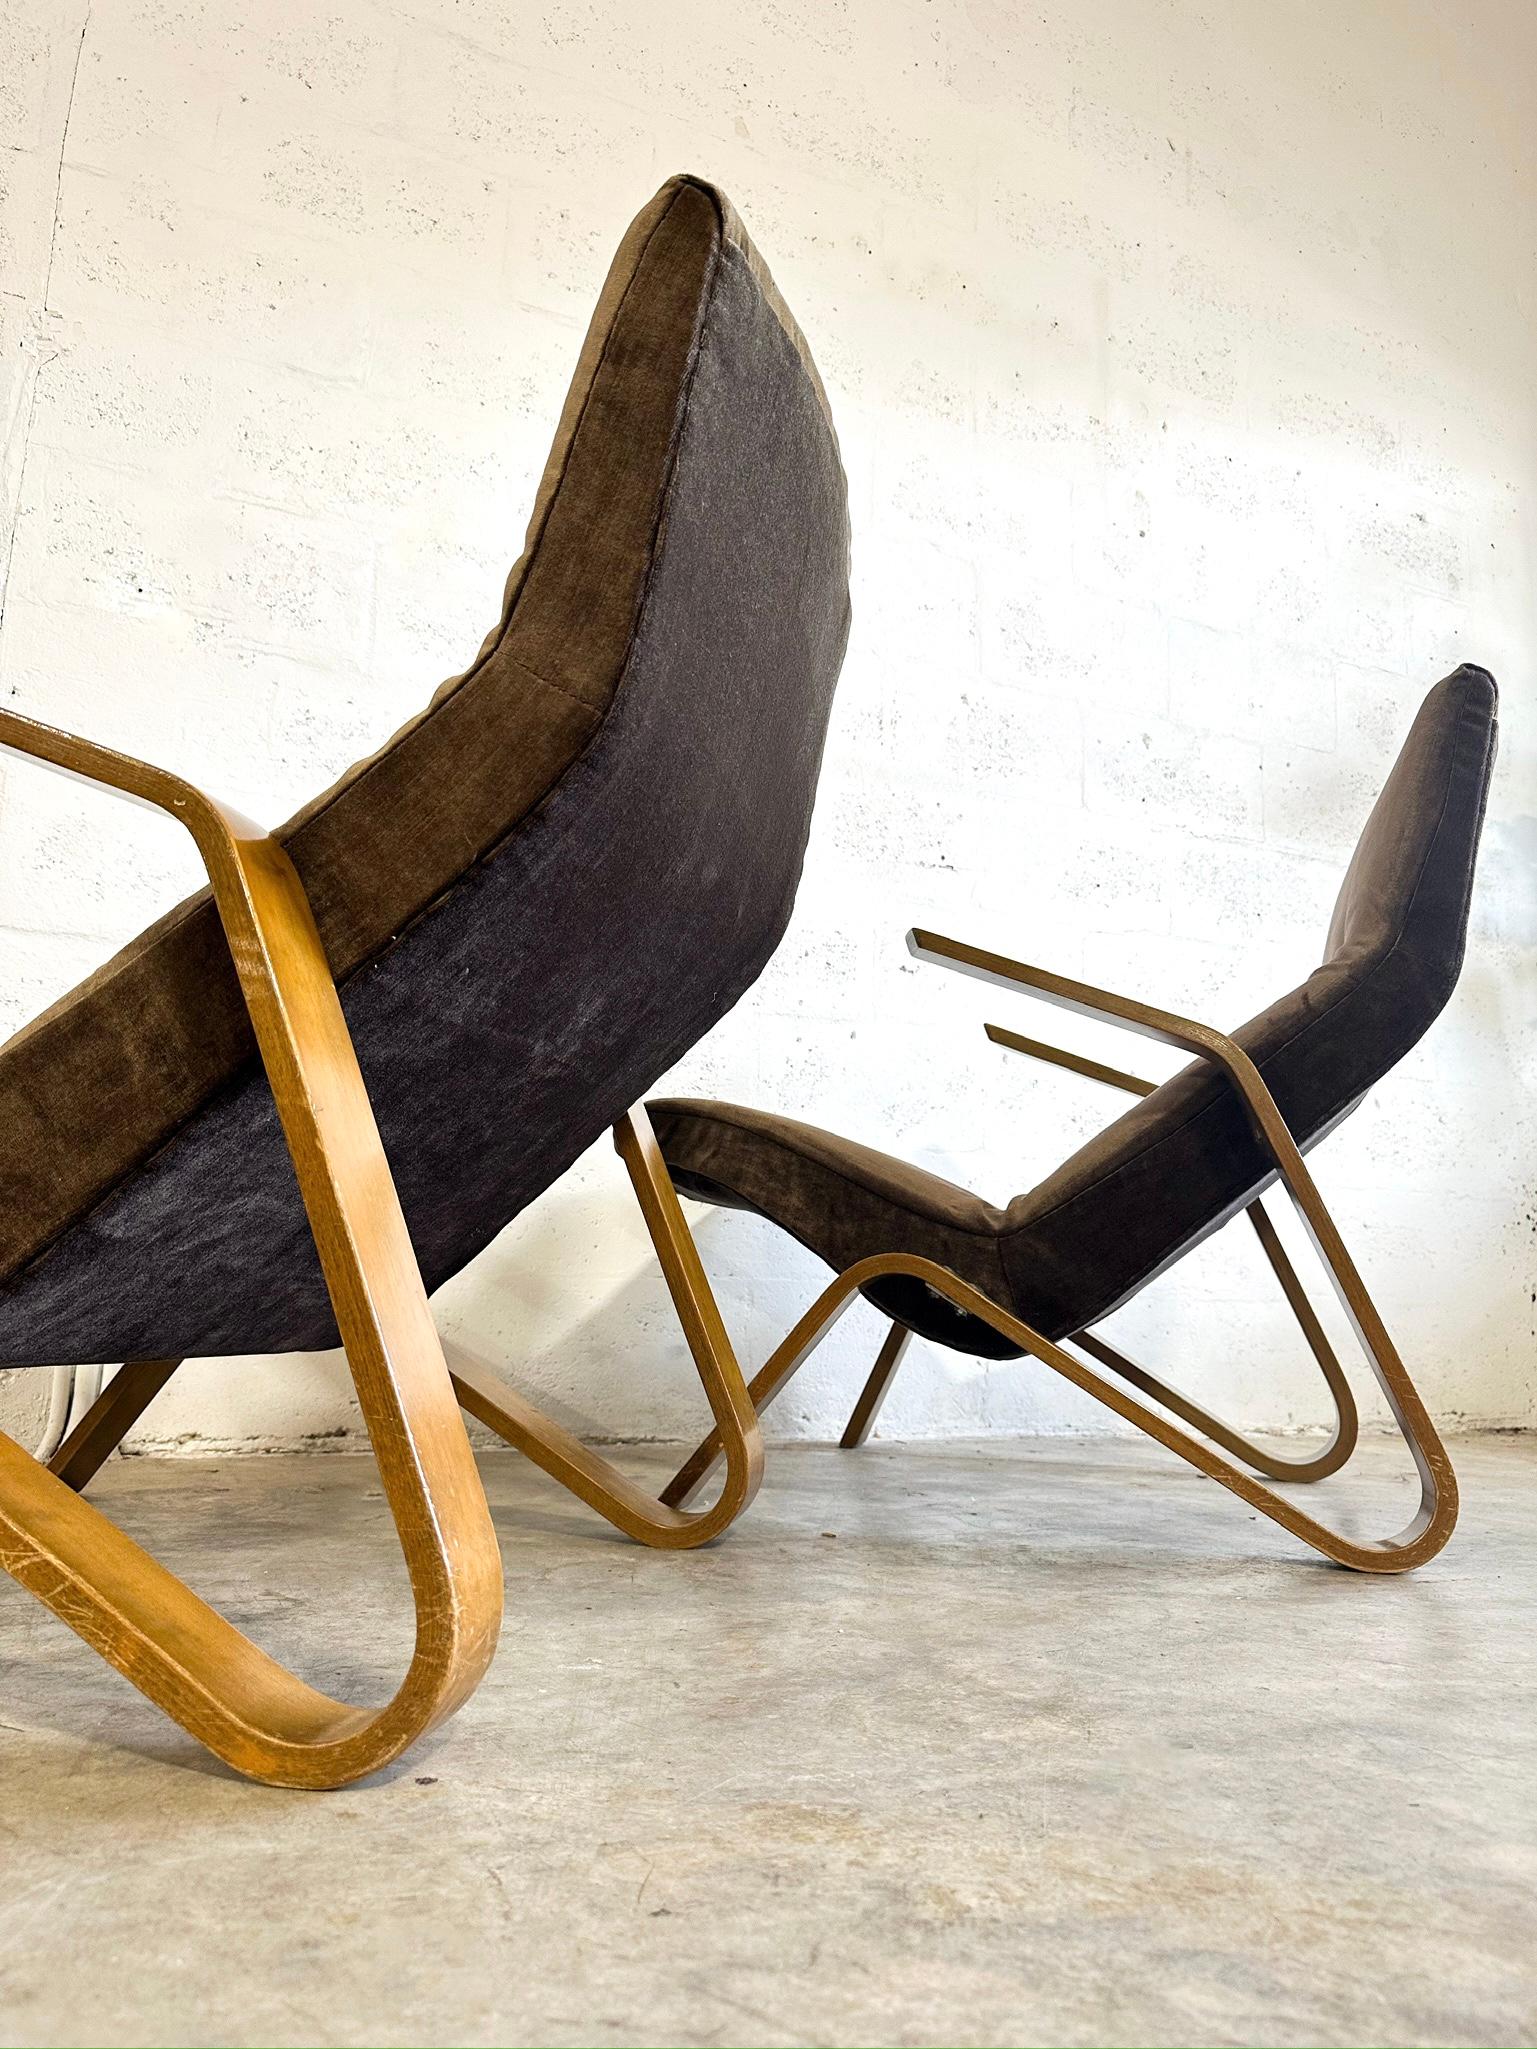 Grasshoper Chairs, entworfen von Knoll und entworfen von Eero Saarinen. Dies war der erste Stuhl, den Saarinen in den 40er Jahren für Knoll entwarf.